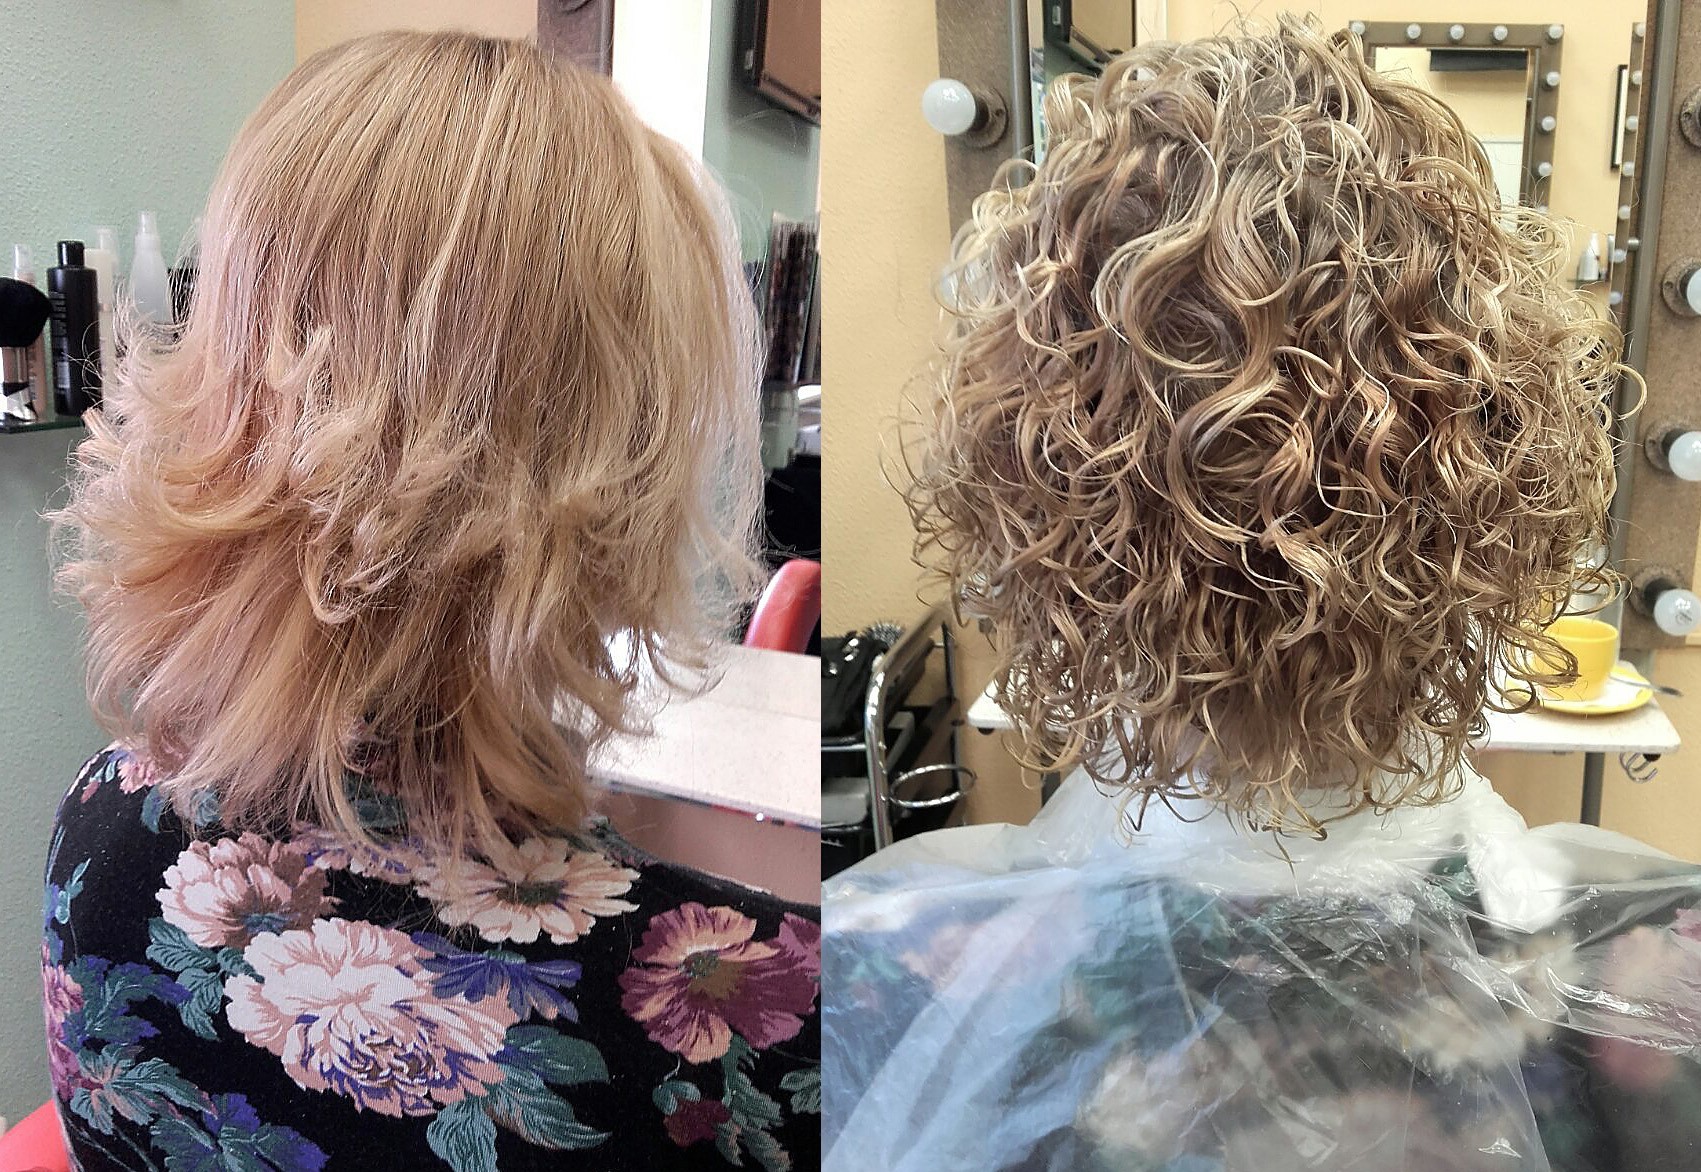 Биозавивка волос фото до и после на короткие волосы крупные локоны фото